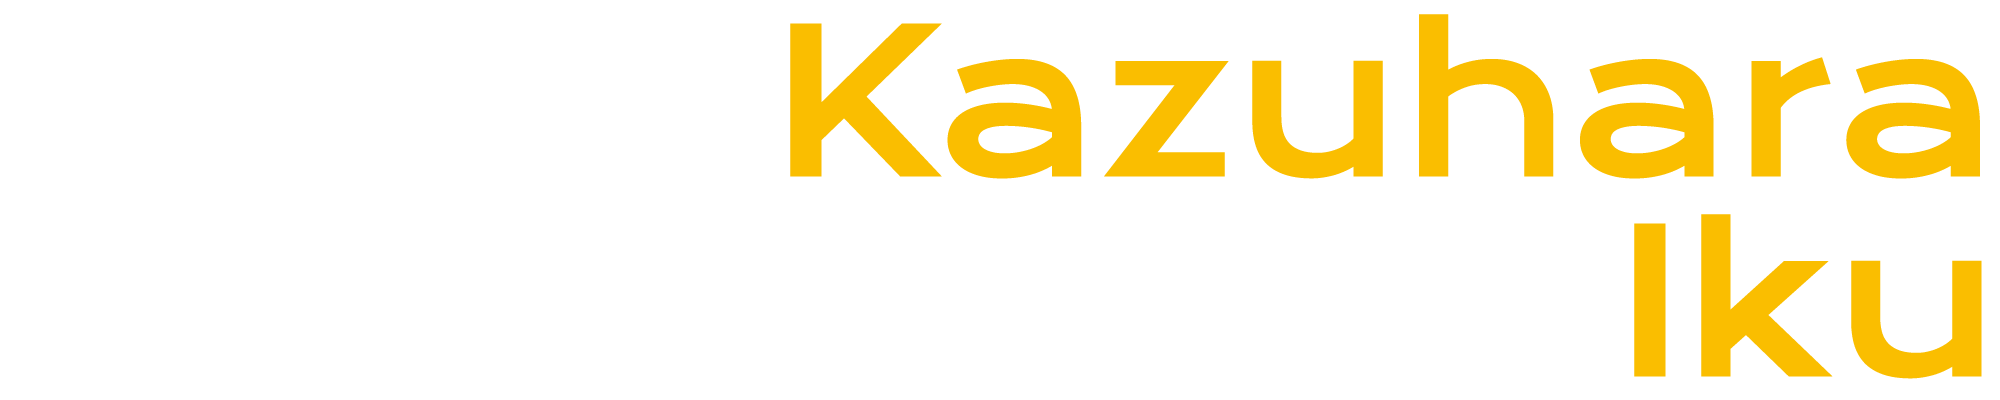 KAZUHARA Iku